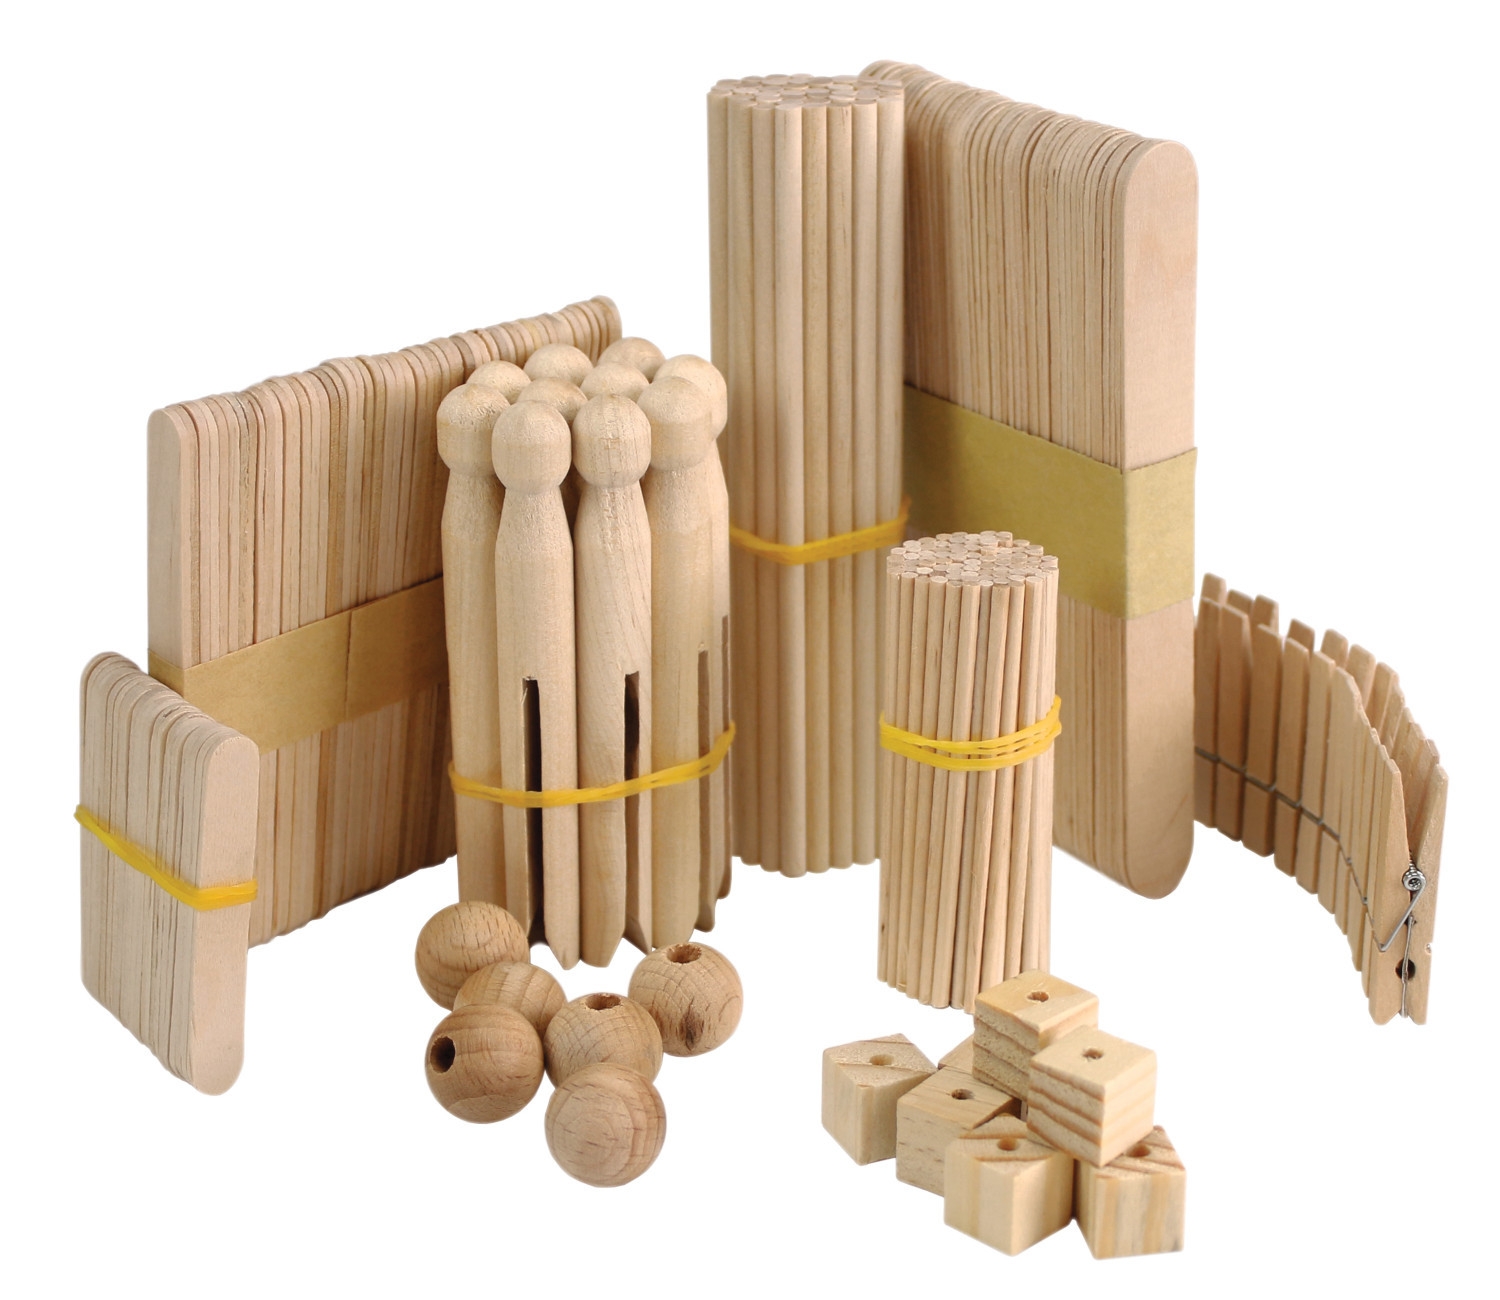 Le kit de construction en bois, une idée cadeau créative et originale